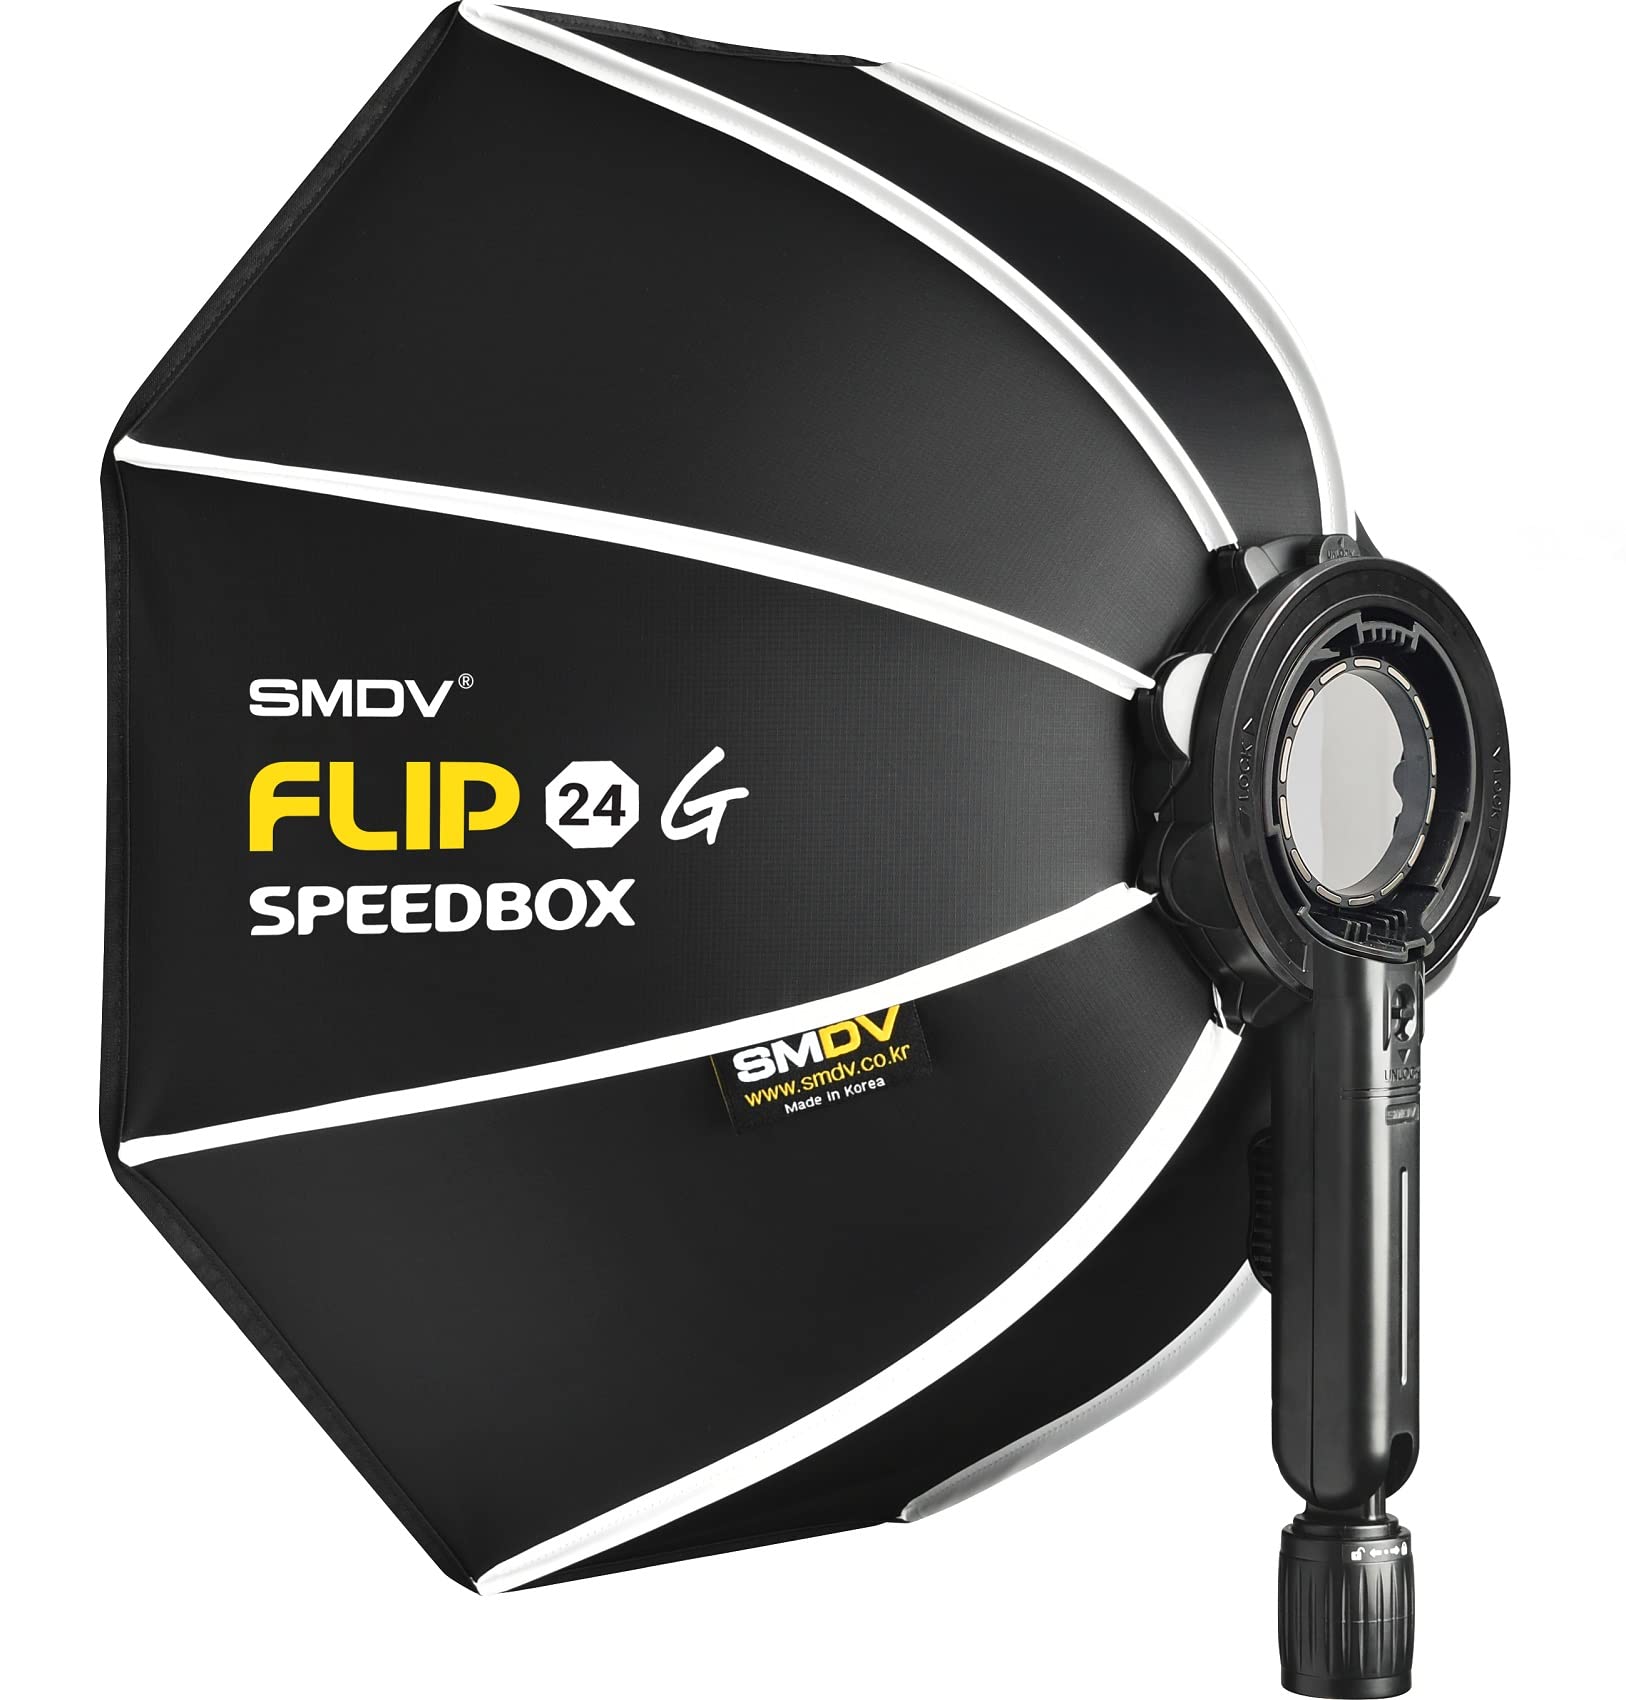 Impulsfoto SMDV Softbox Speedbox-Flip 24 | 60 cm Ø | 525 x 130 mm | Einsatzbereit in 1 Sek. | Mit Adapter für Profoto A1